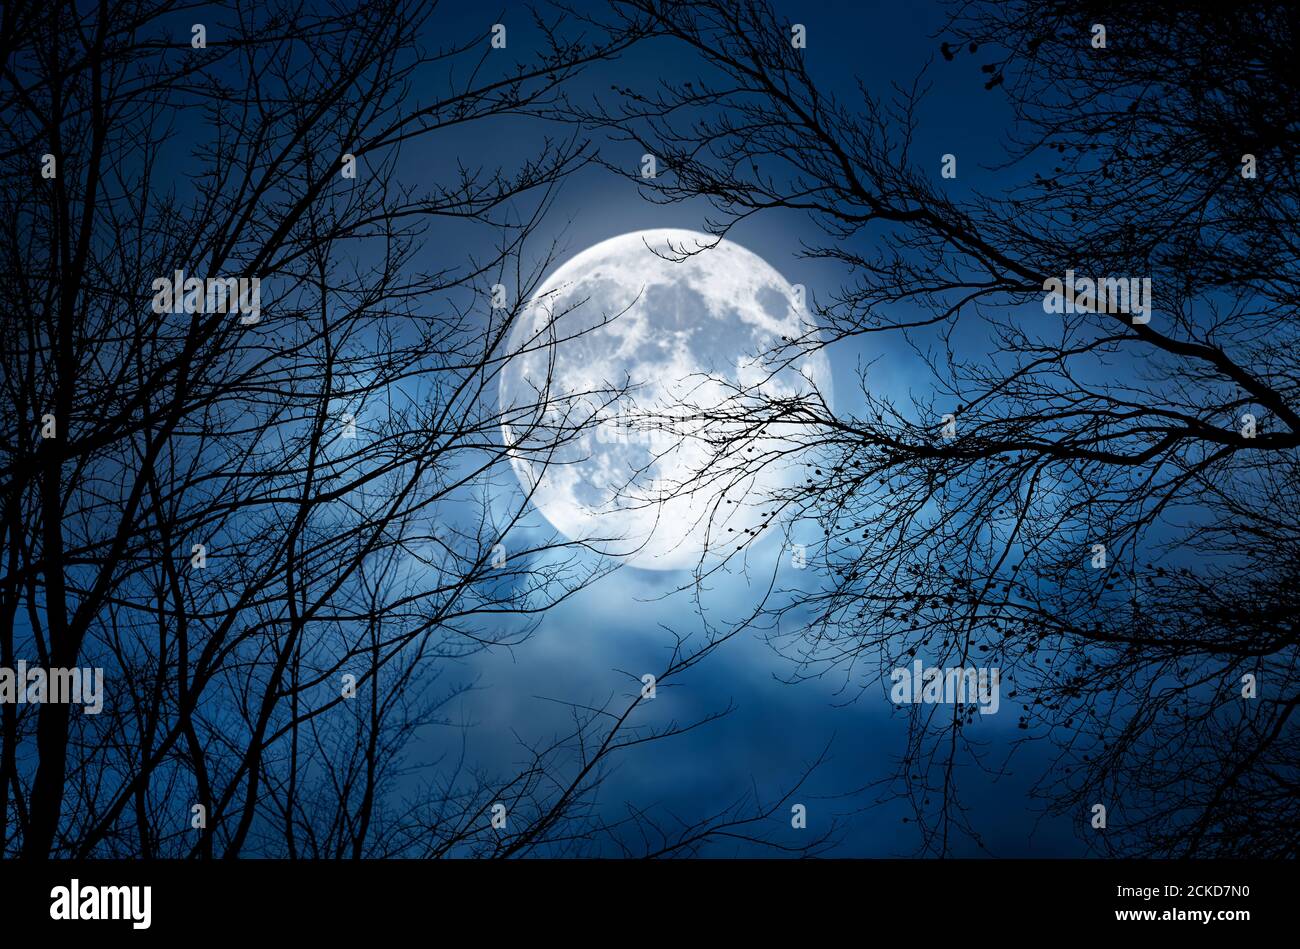 La silueta de una espeluznante rama desnudo halloween contra un cielo nocturno azul de invierno con una luna llena brillante y nubes Foto de stock